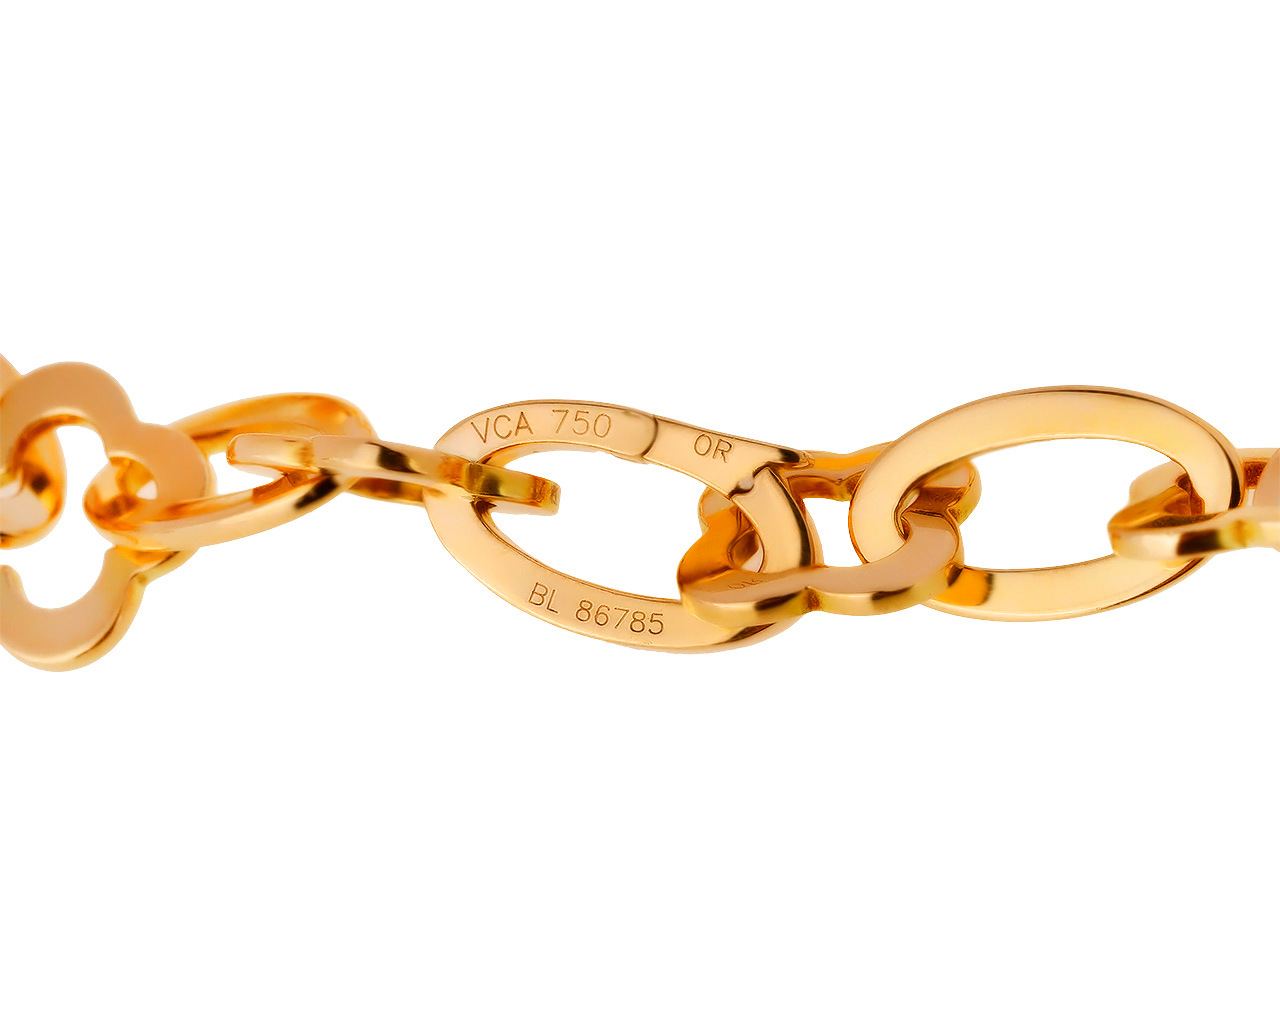 Оригинальный золотой браслет Van Cleef & Arpels